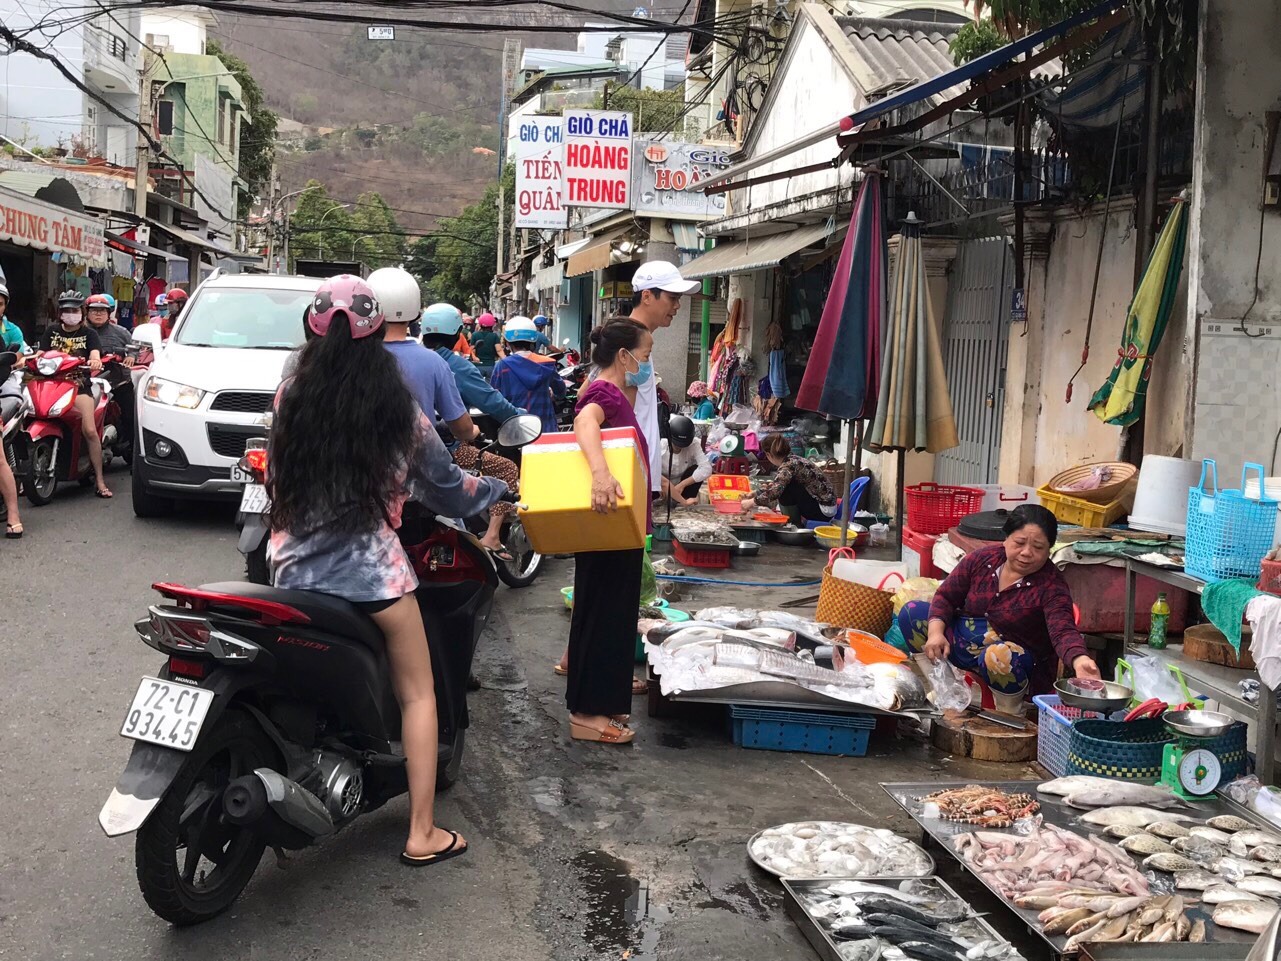 Chợ Cô Giang (phường 4) lại buôn bán lộn xộn như chưa từng có cuộc ra quân lập lại trật tự đô thị.